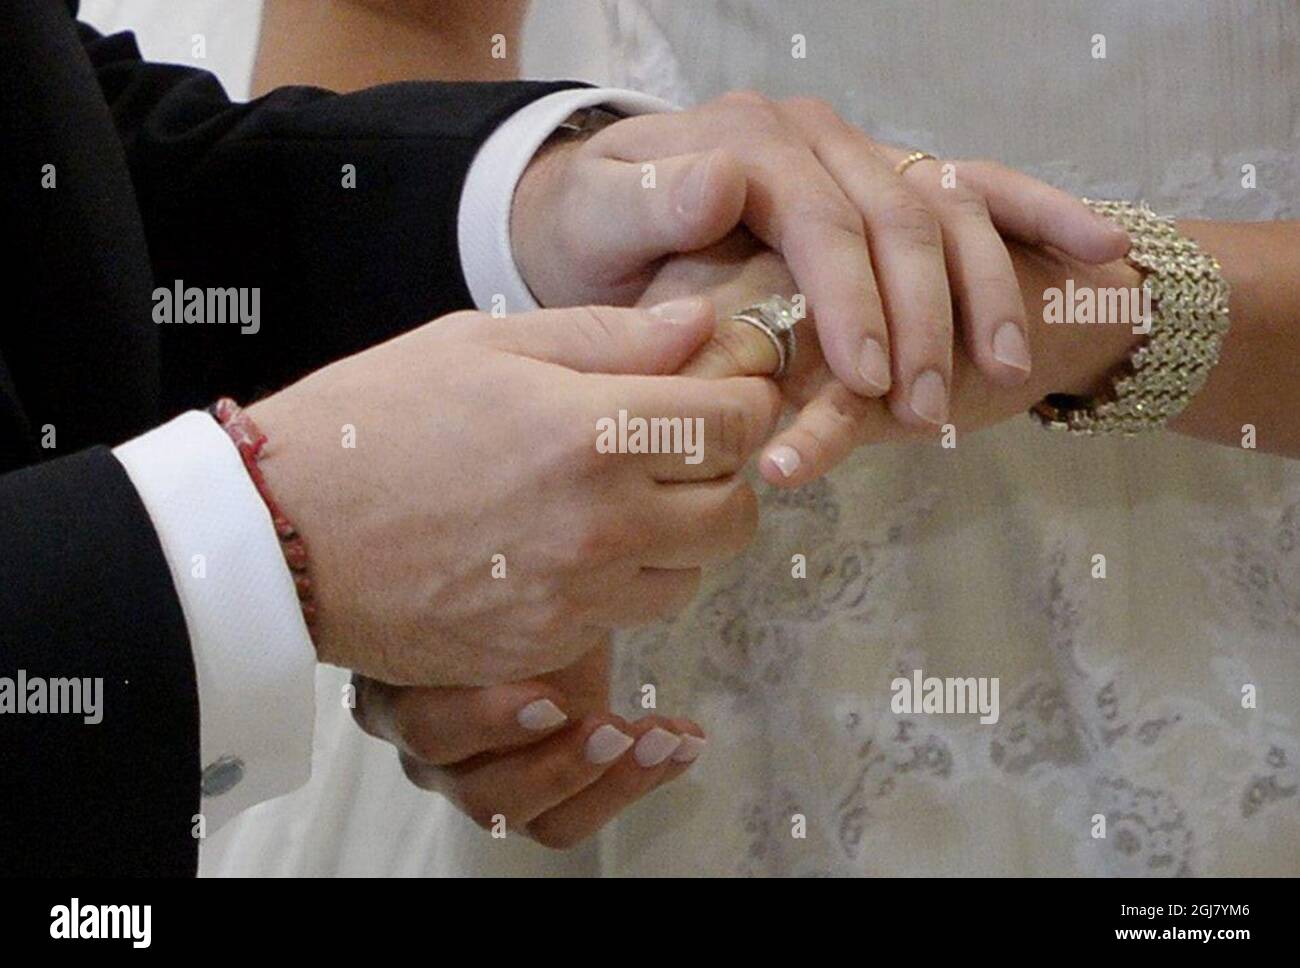 На какую руку одевать кольцо мужчине. Кольцо на руке. Обручальные кольца на руках. Обручальное кольцо на левой руке. Свадебные кольца на пальцах.